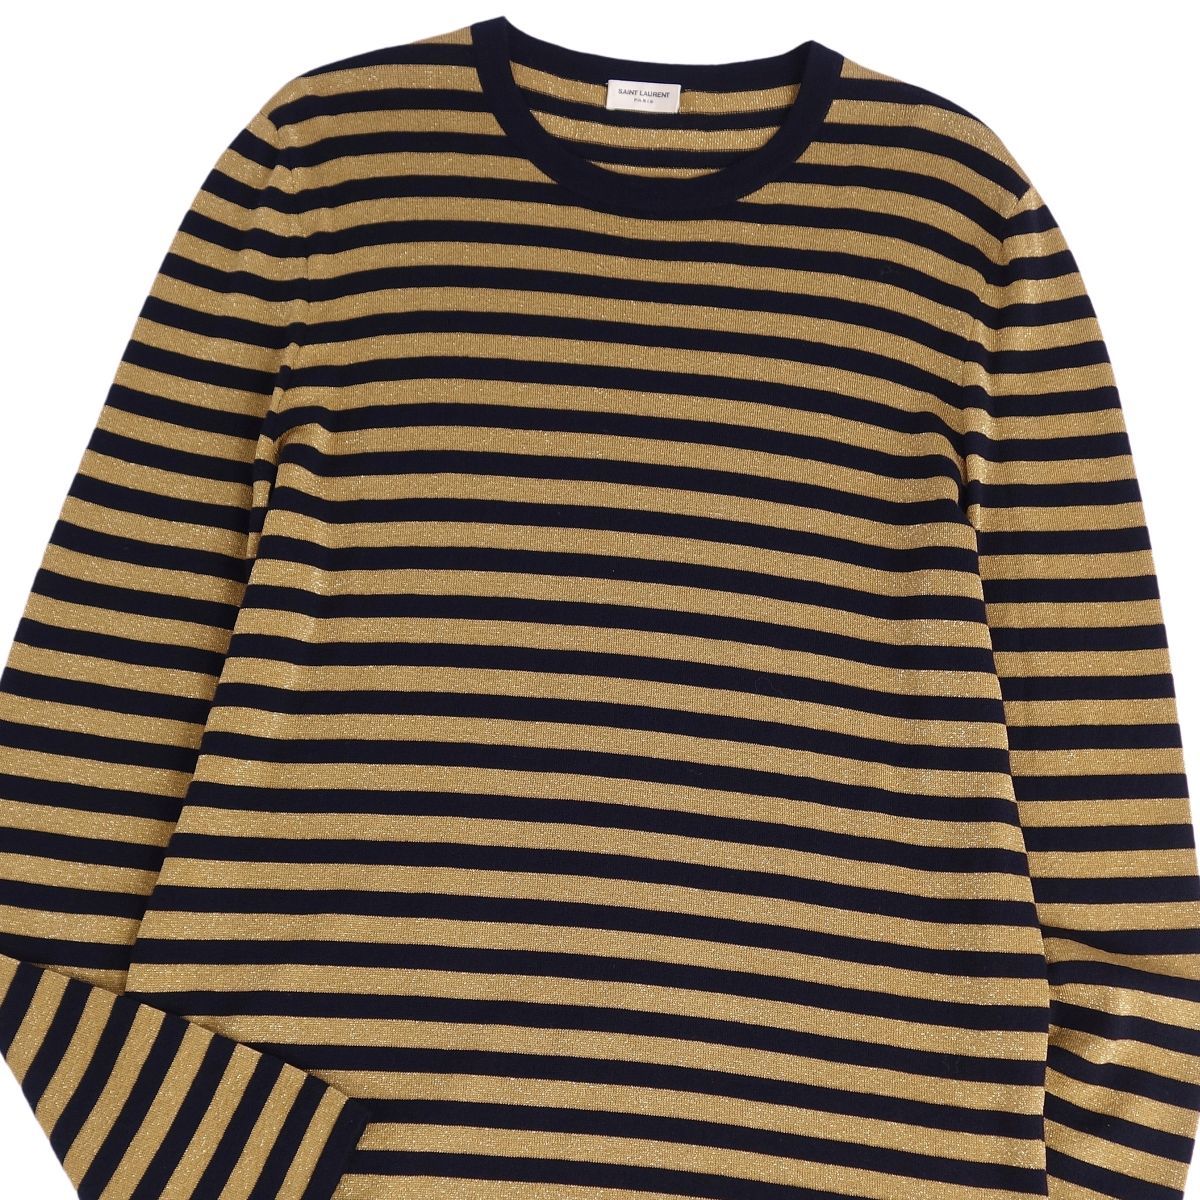  beautiful goods sun rolan Paris SAINT LAURENT PARIS knitted sweater long sleeve border pattern g Ritter wool tops men's L cg09de-rm05f06313